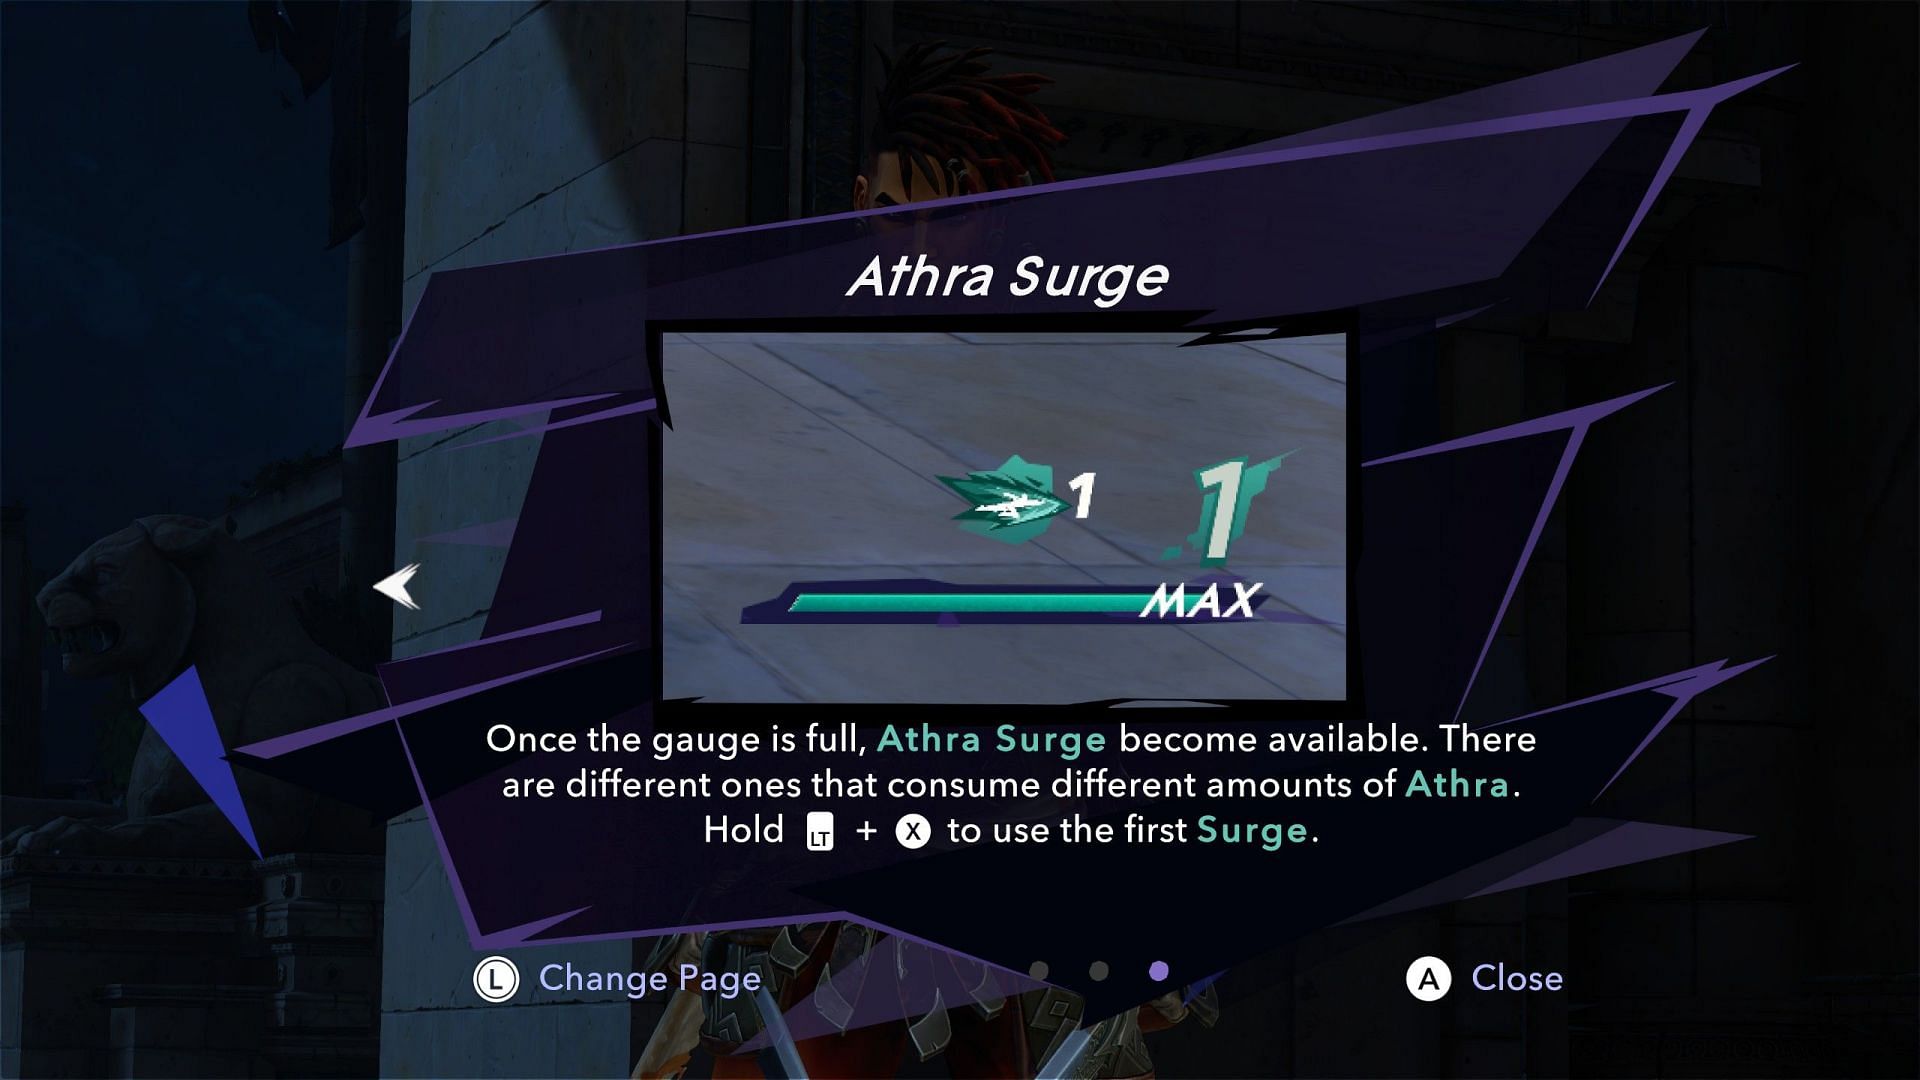 How to use Athra Surge? (Image via Ubisoft)